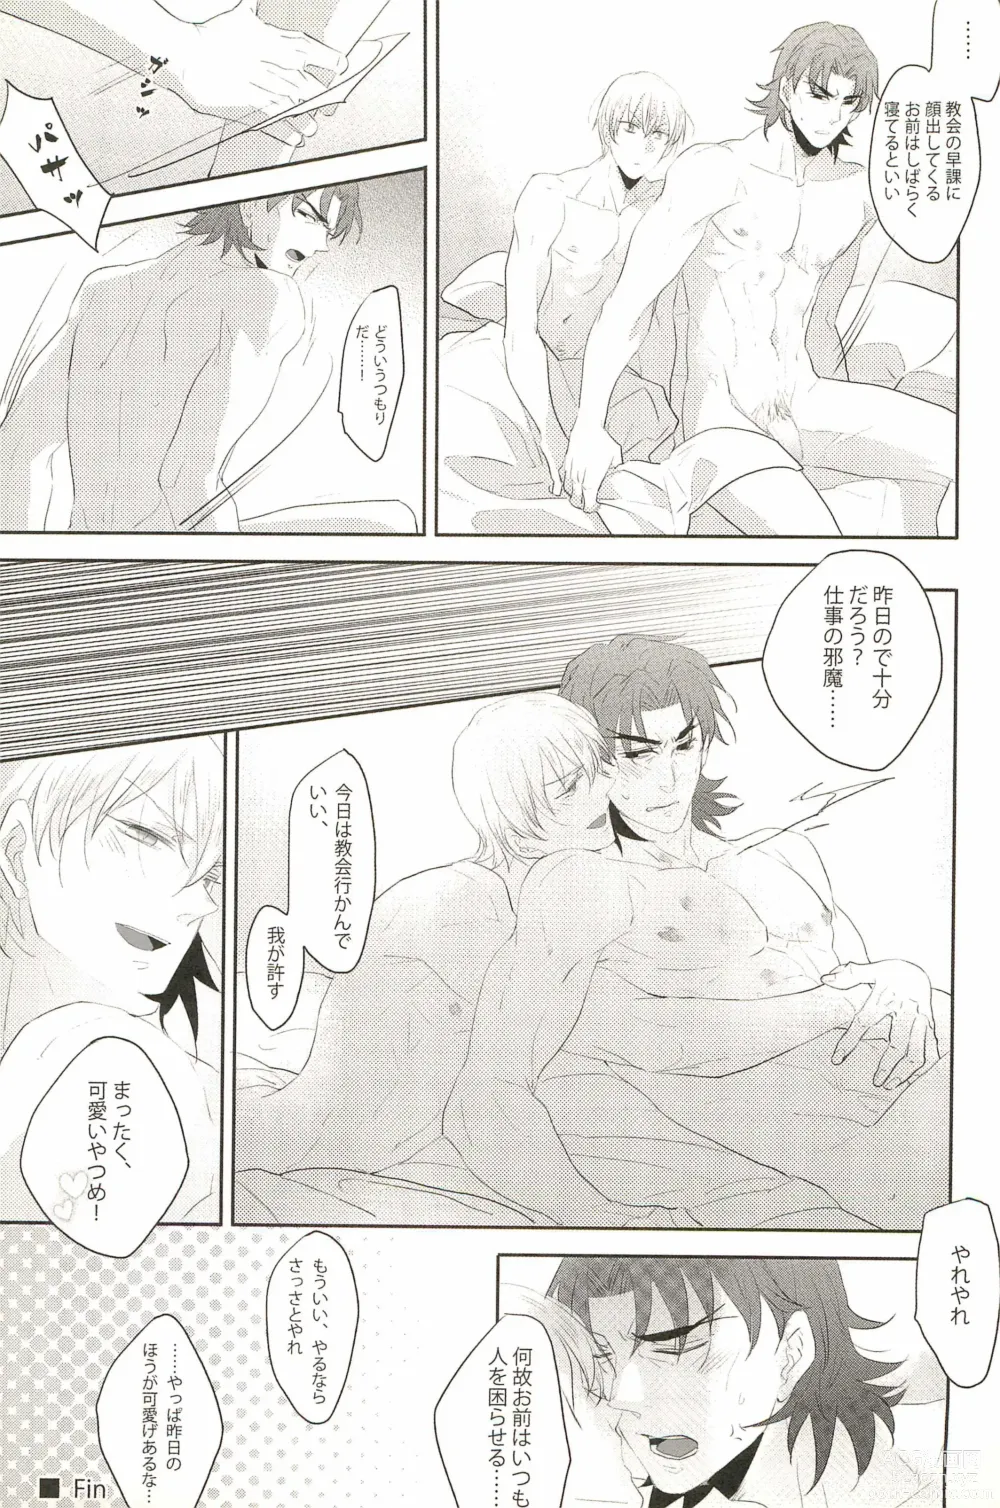 Page 31 of doujinshi Warera Dosei Shite Iru.